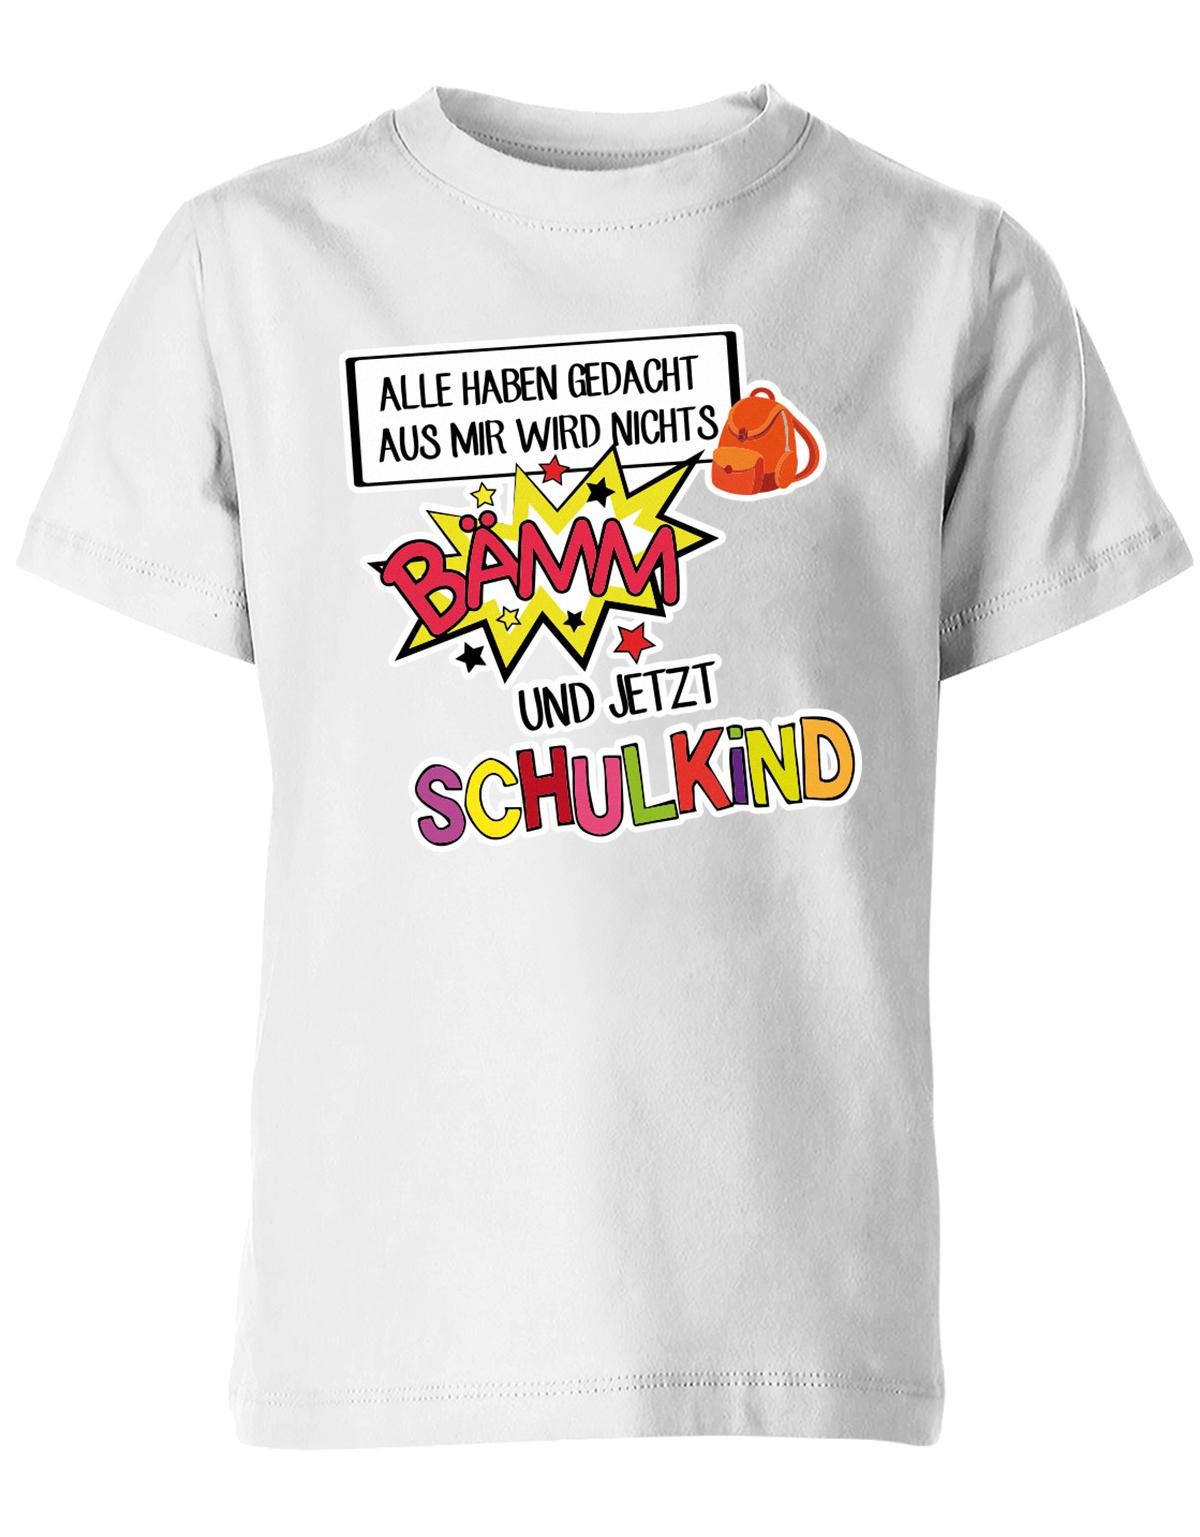 Alle haben gedacht aus mir wird nichts - bämm Schulkind - Einschulung T-Shirt Weiss